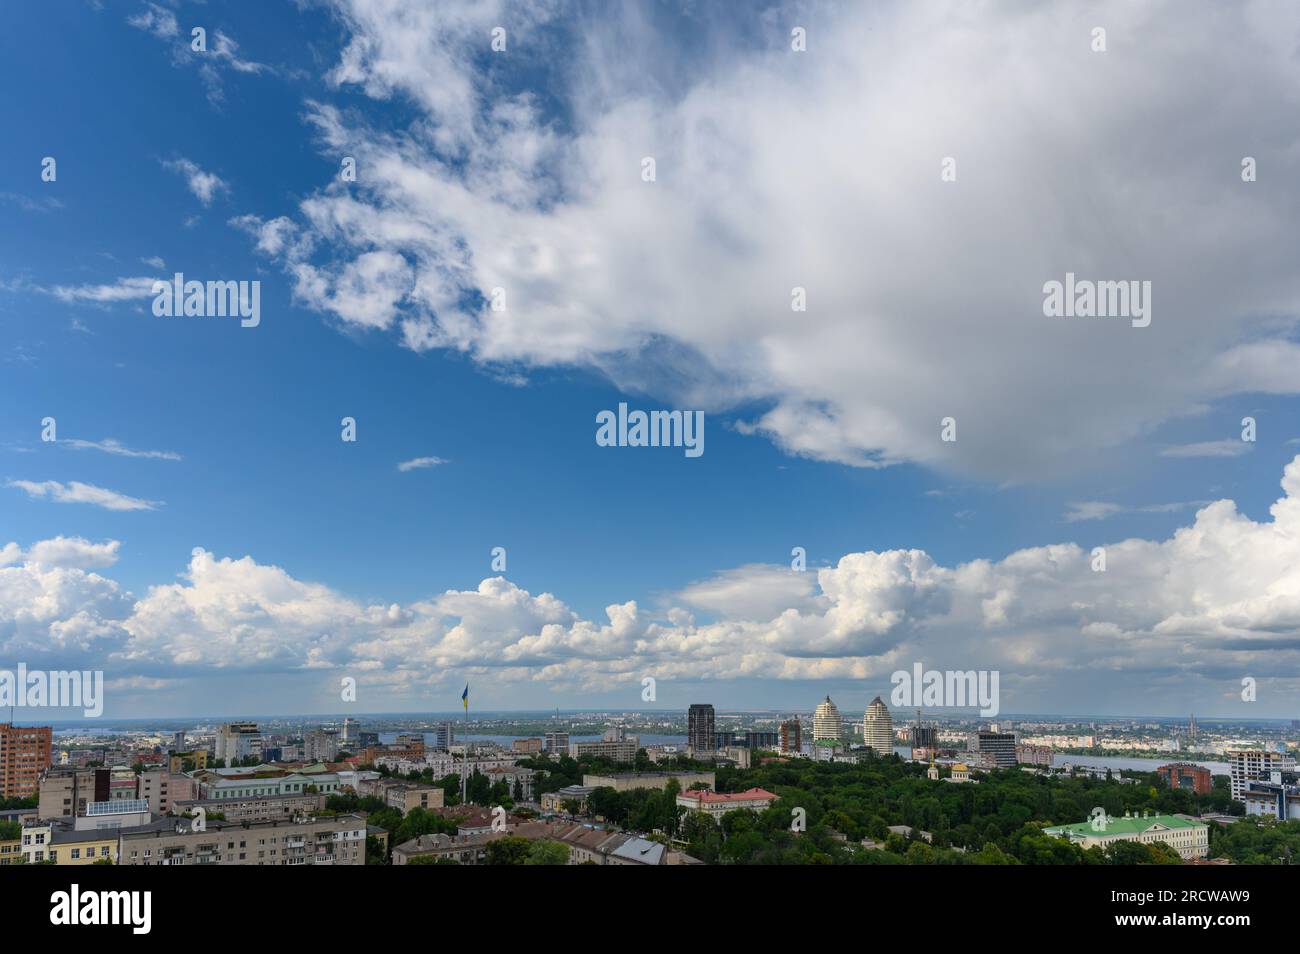 Ucraina, Dnipro. Splendide nuvole cumulus nel cielo blu della città. Foto Stock